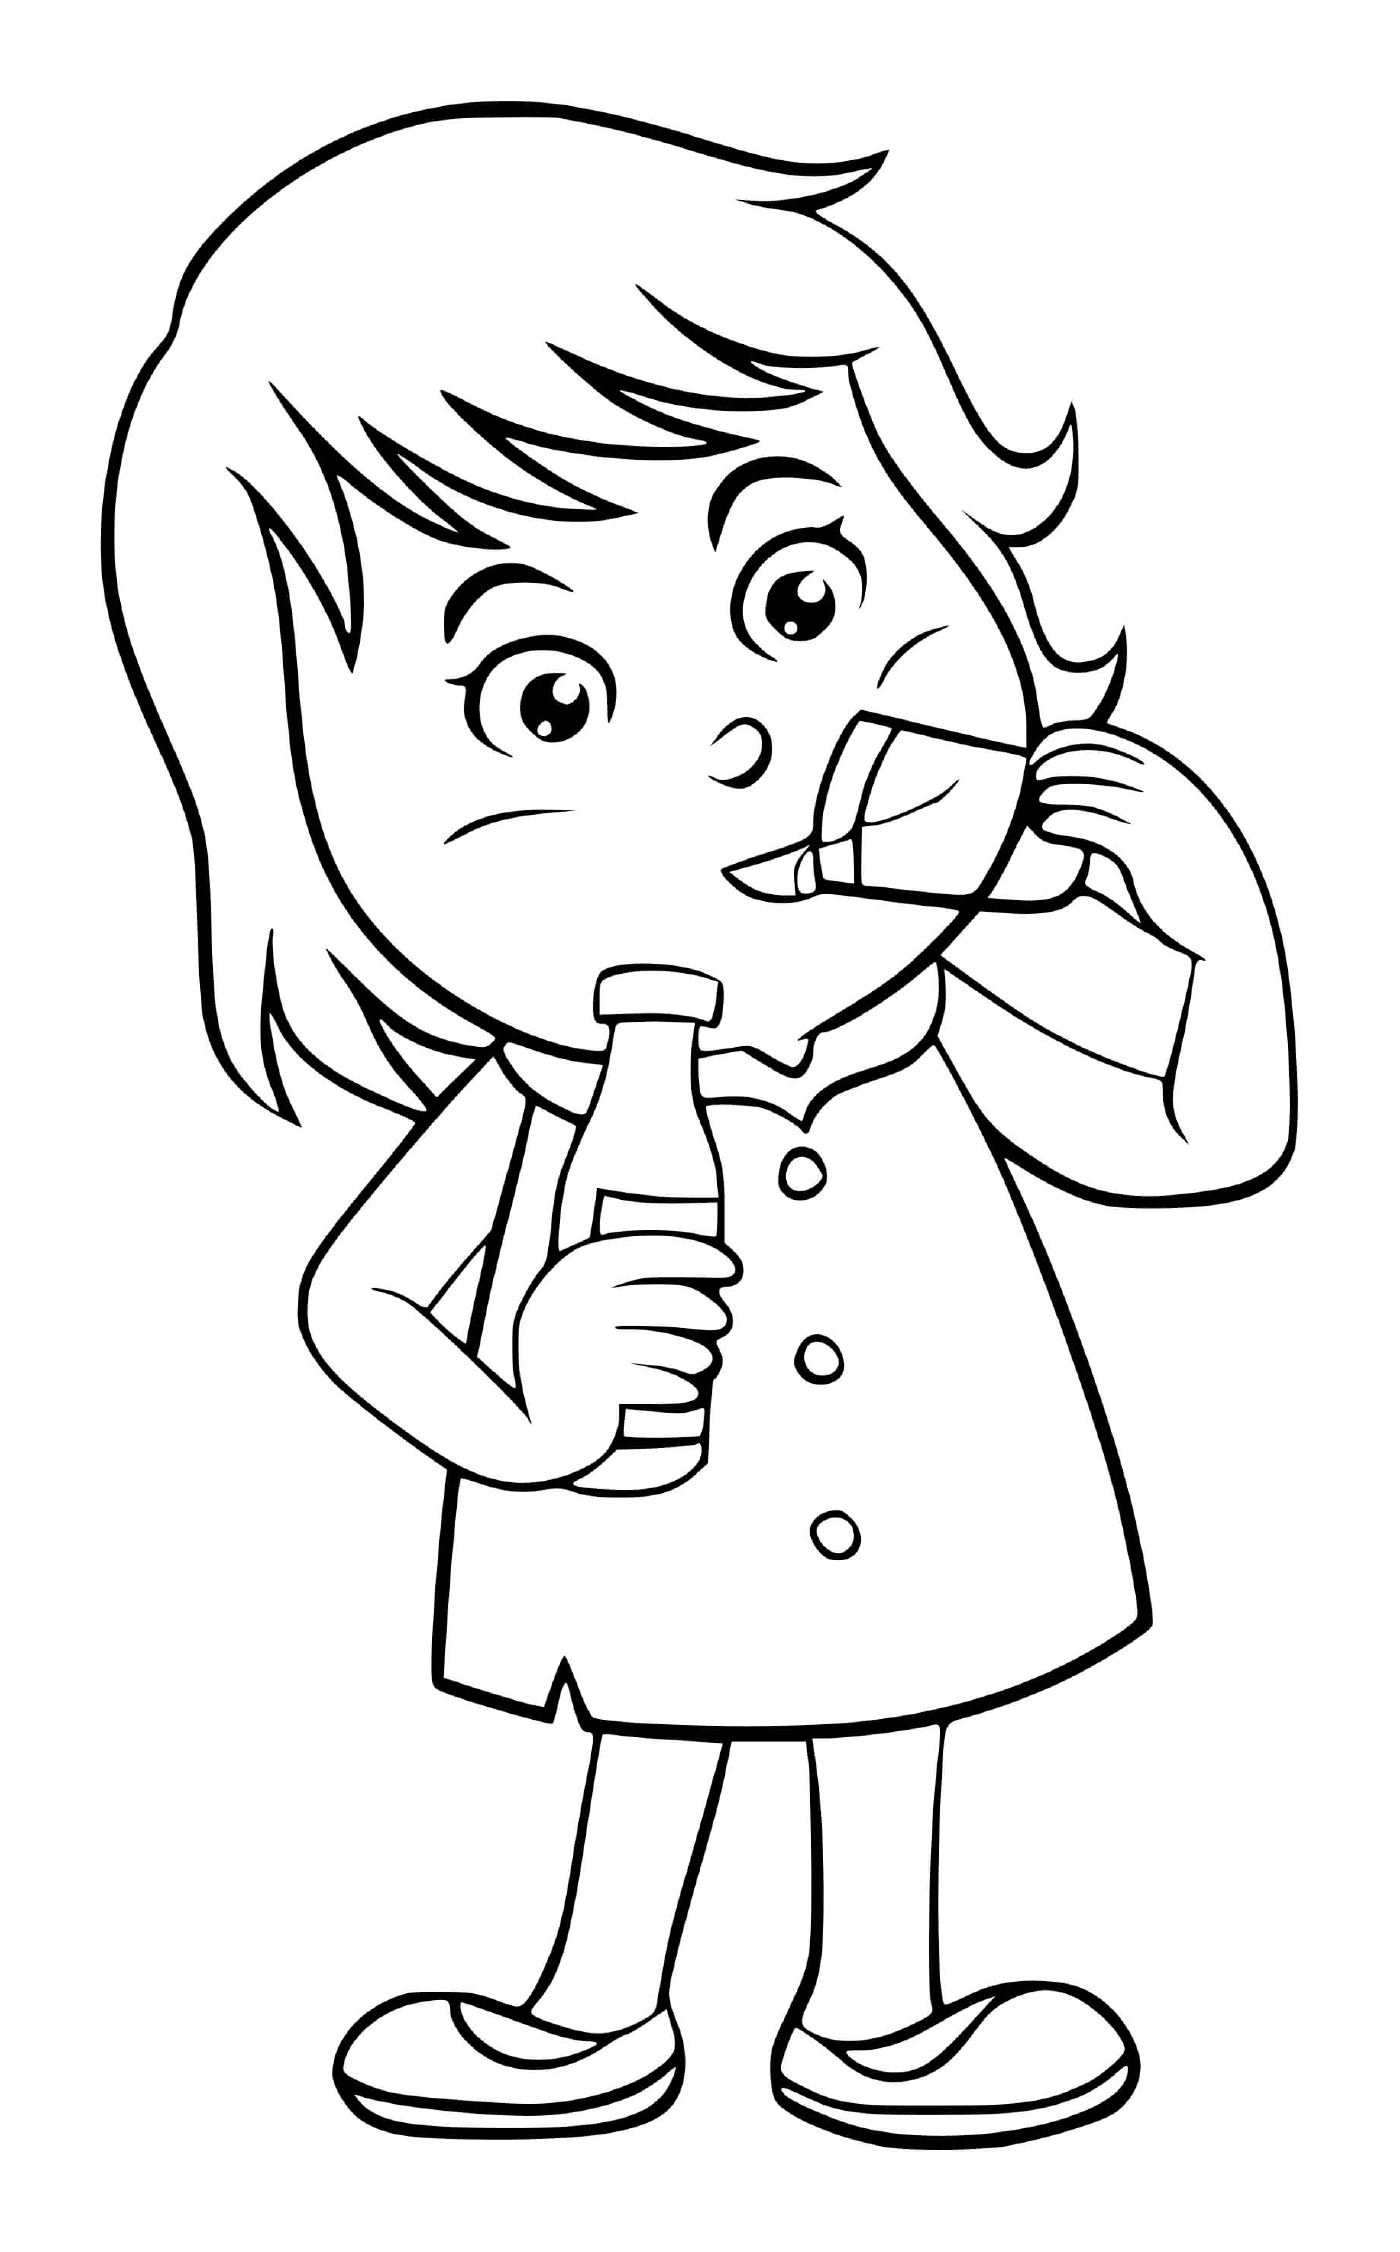  الطفل يشرب الماء بالرشى 